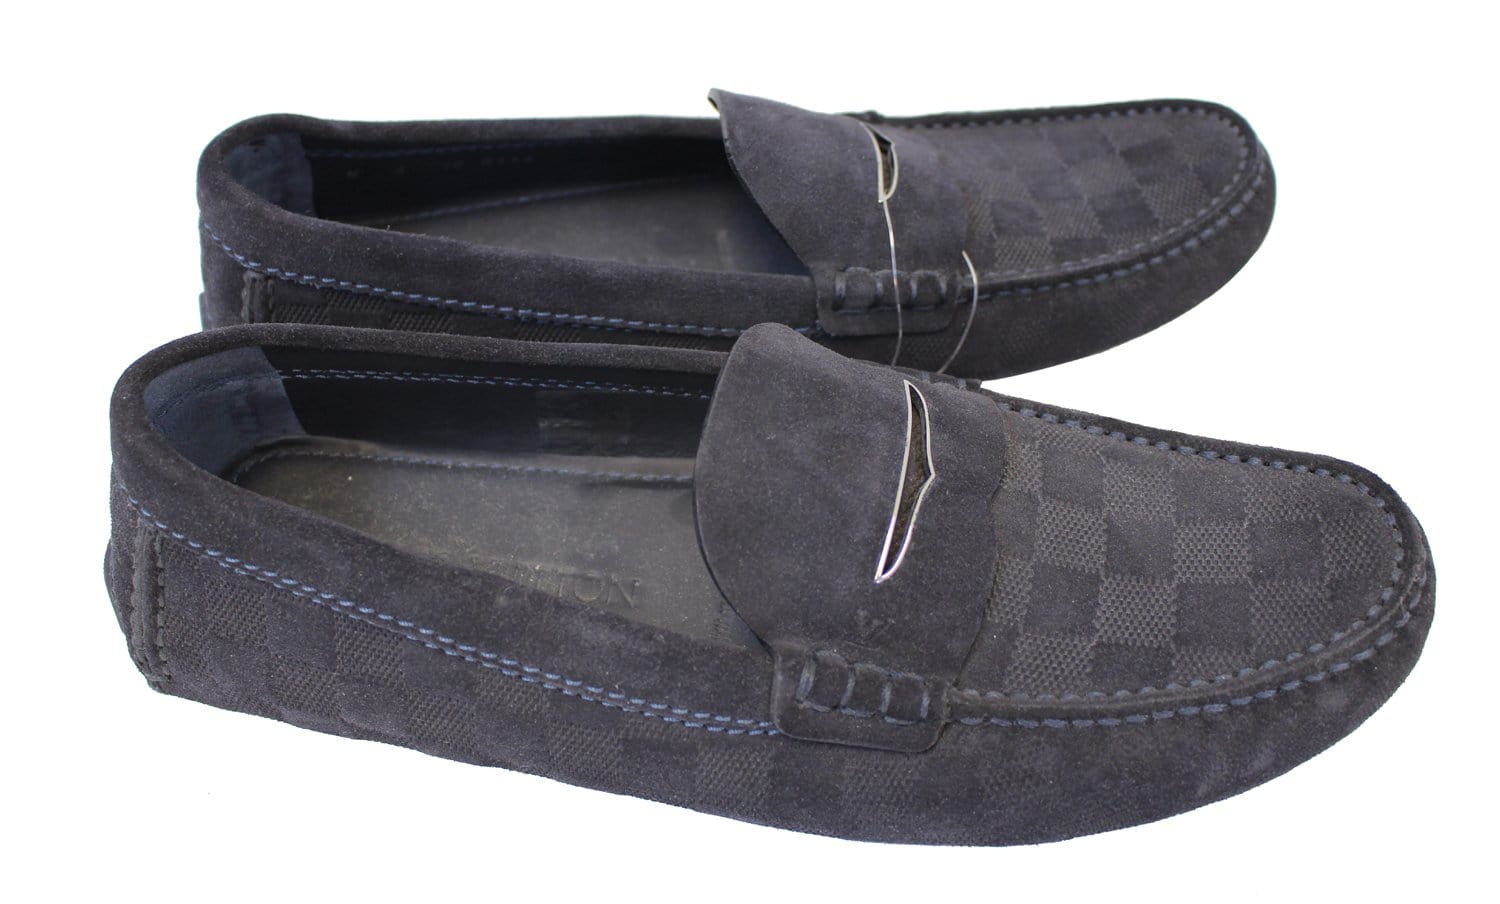 Louis Vuitton Men's Leather Driving Shoes, Size US 8